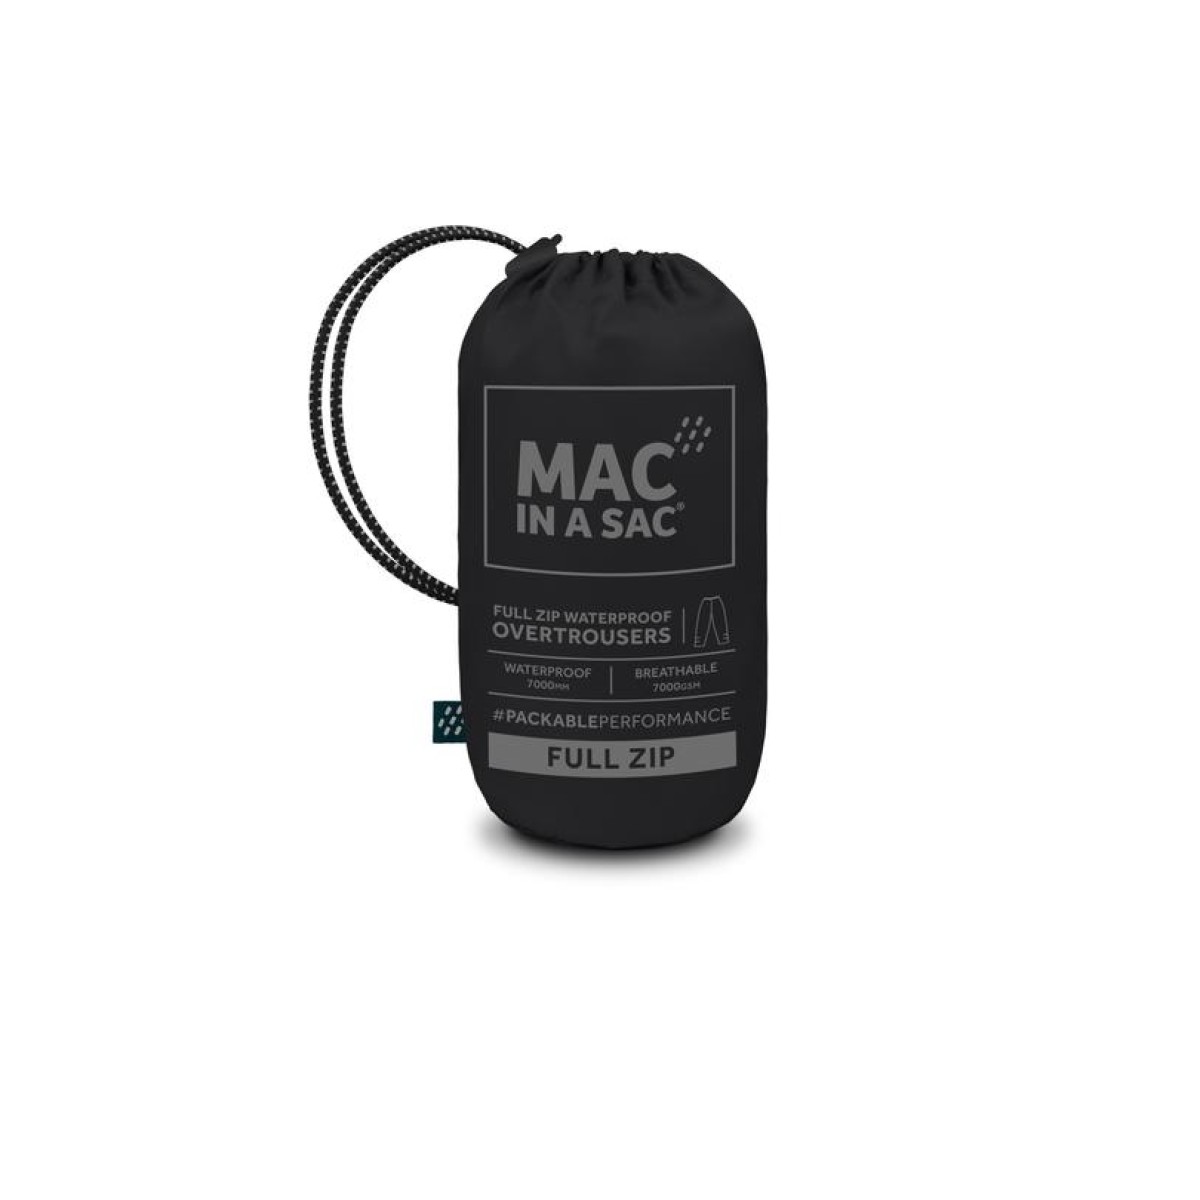 Waterproof Mac in a Sac Origin 2 Full Zip Overtrousers Black MAC IN A SAC - view 4